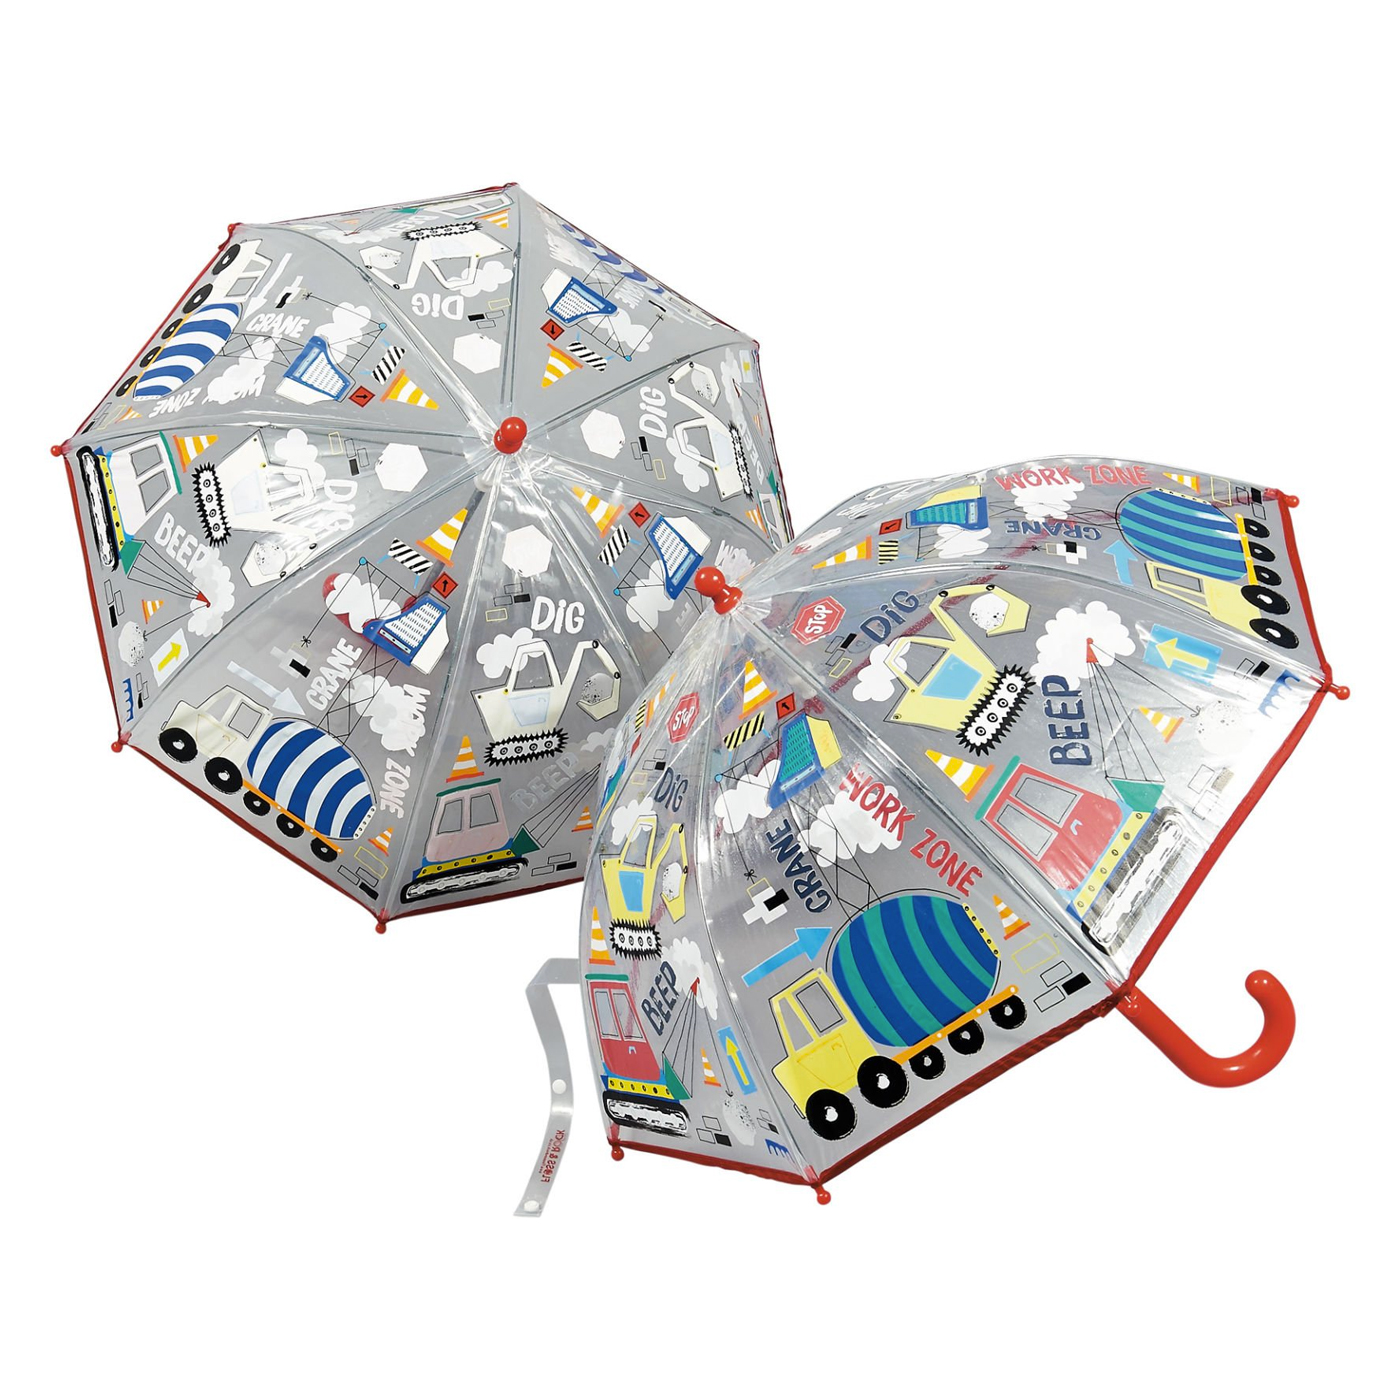  Floss & Rock Renk Değiştiren Şeffaf Şemsiye  | Construction